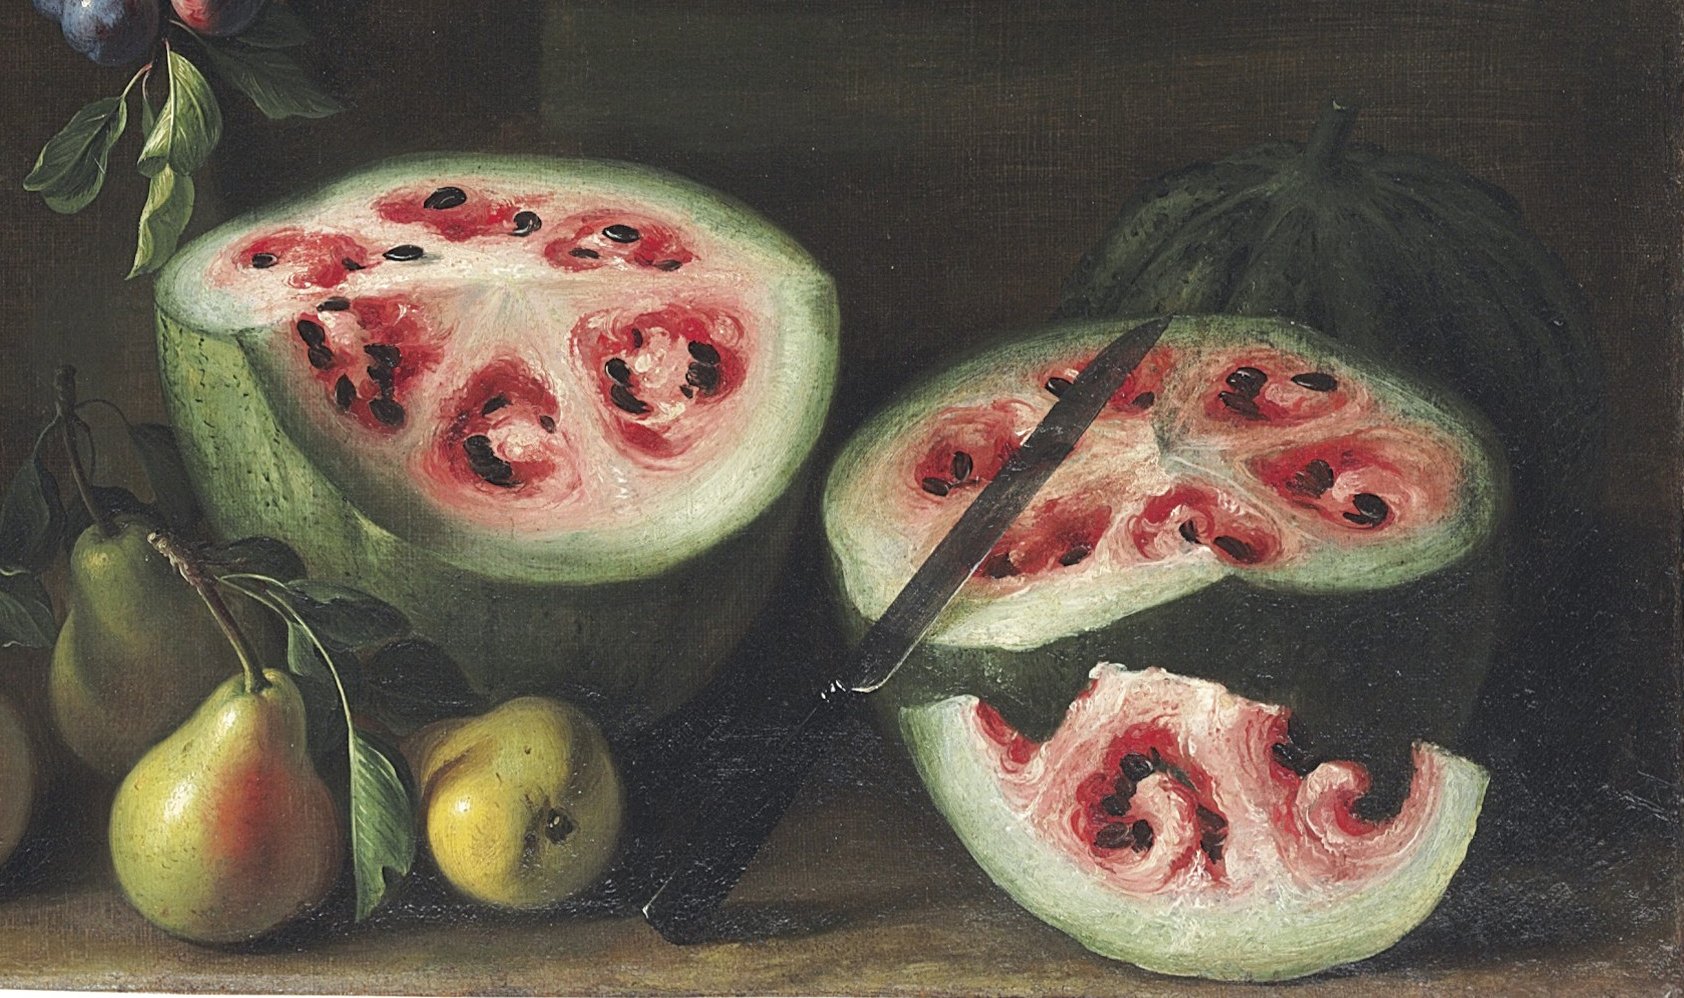  Nazaj v preteklost: 6.000 let stara semena lubenice namigujejo na okuse iz preteklosti